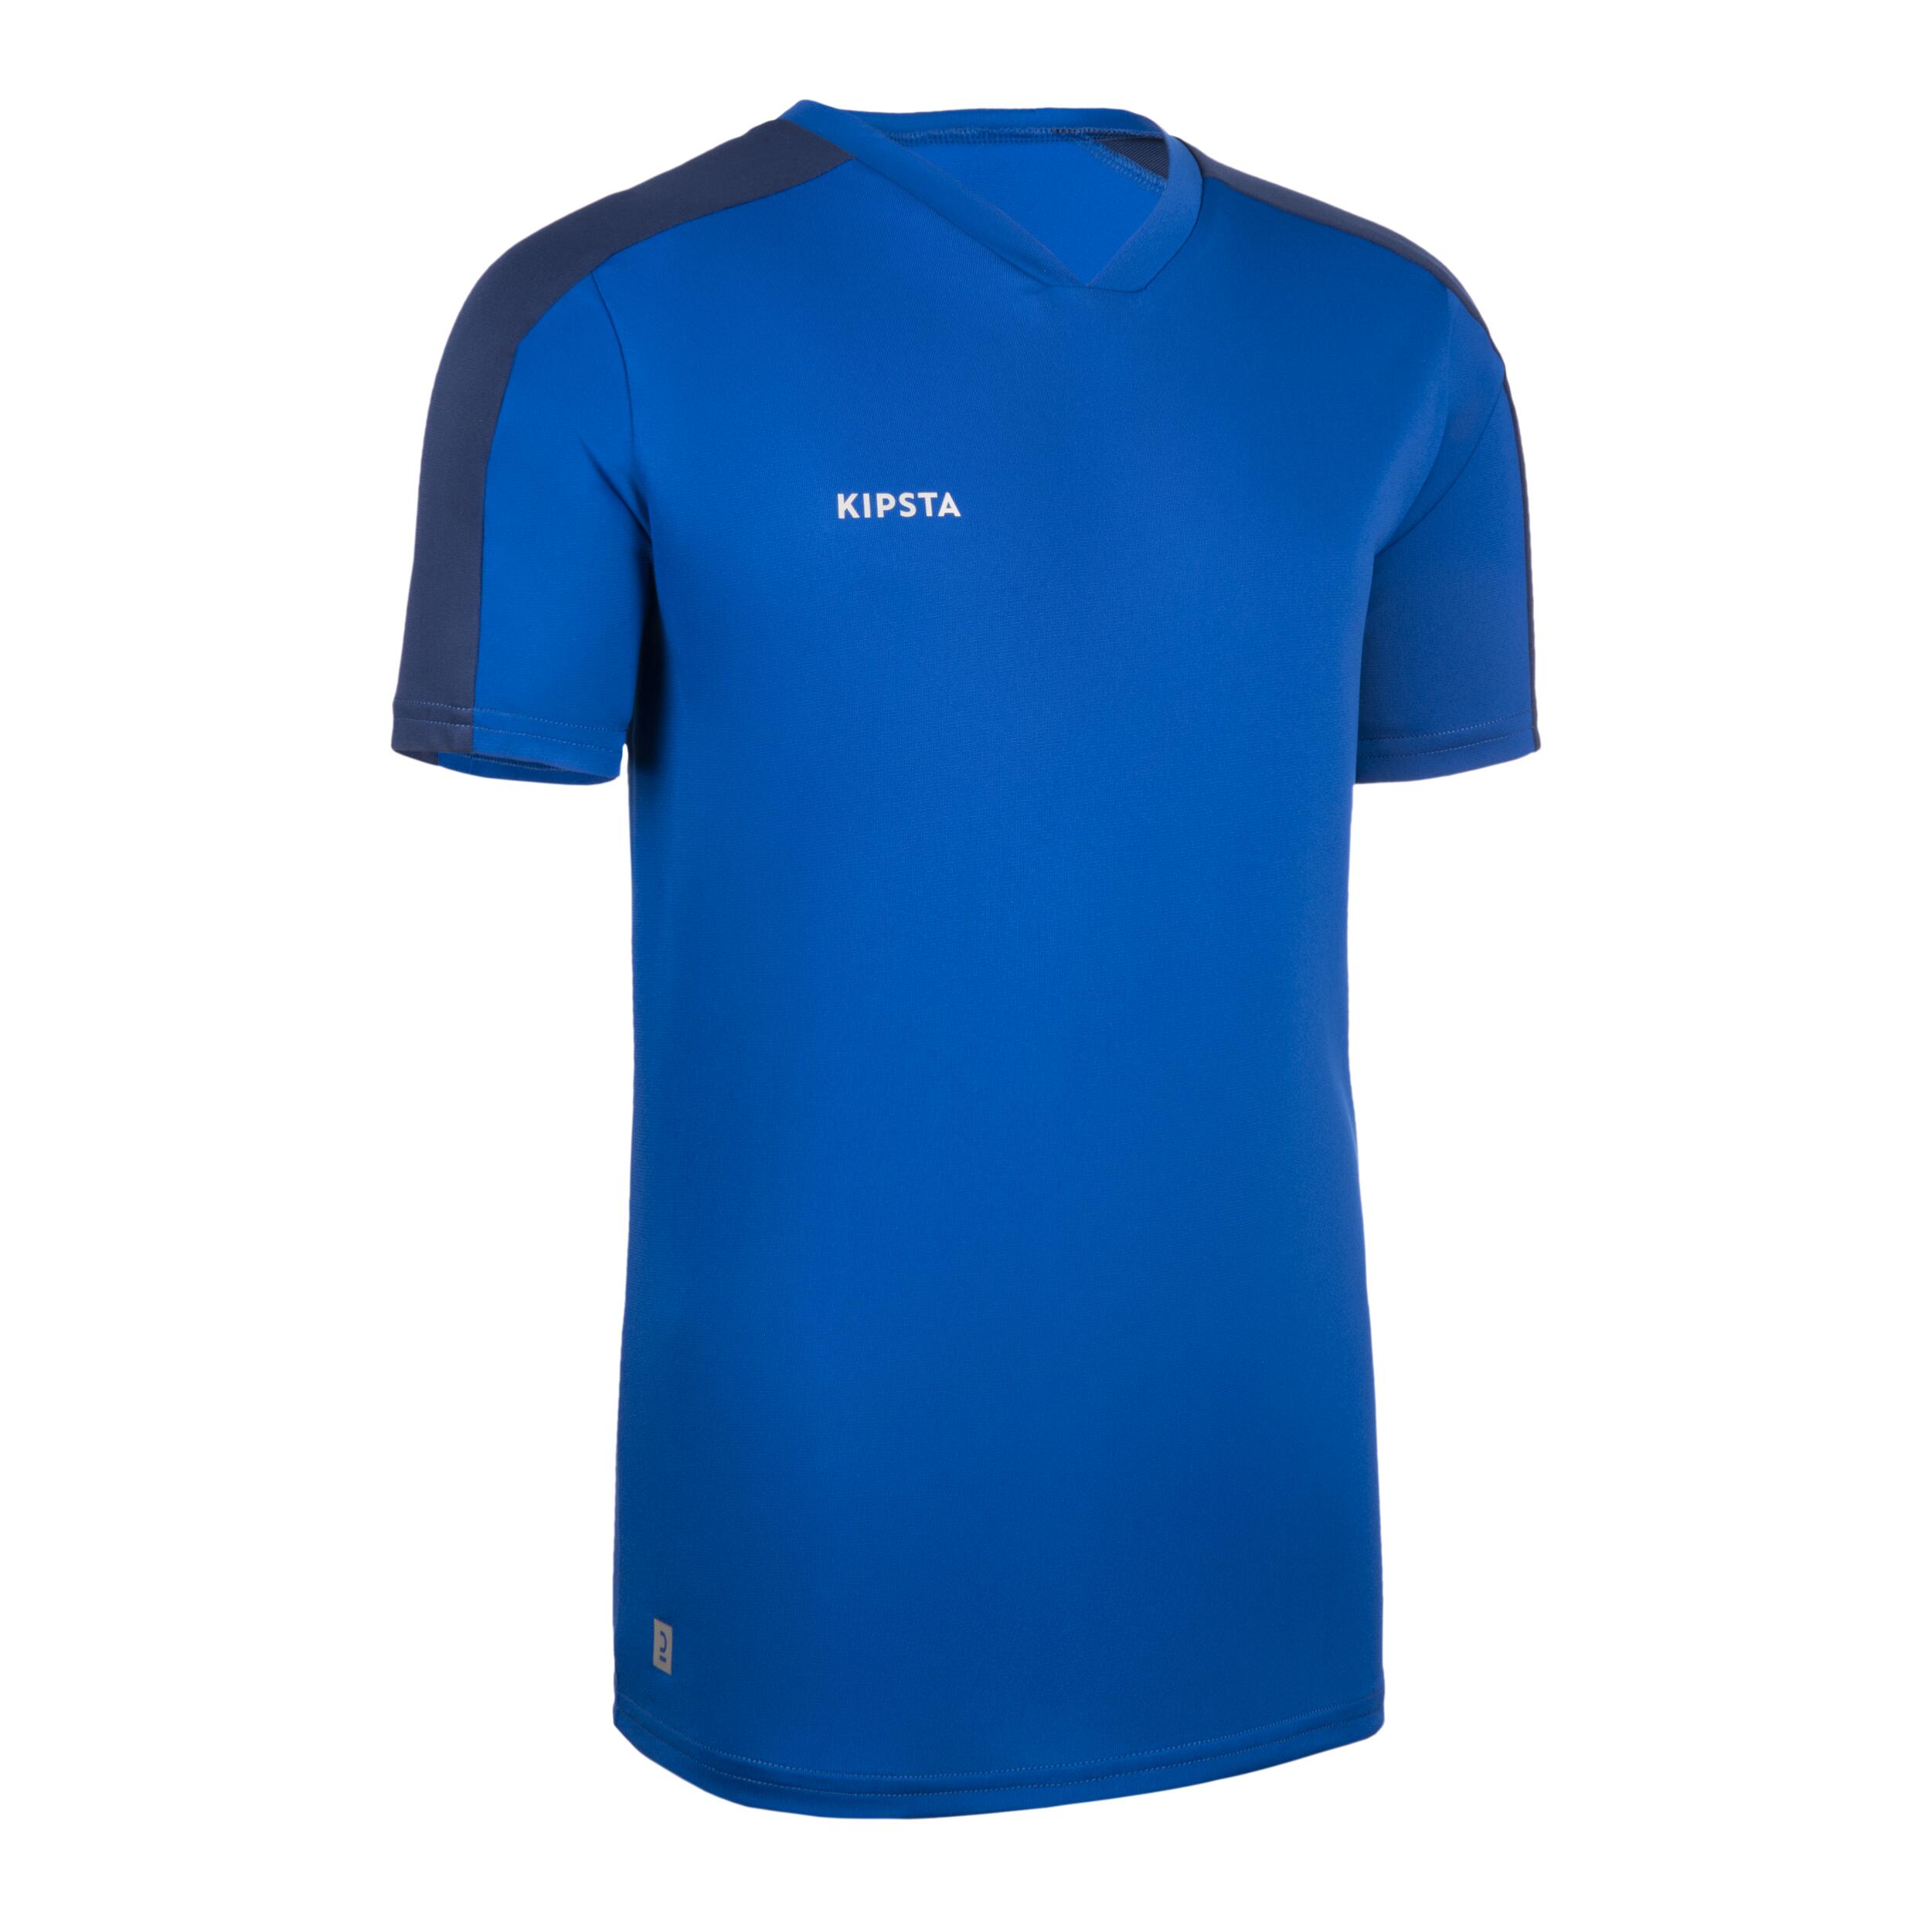 KIPSTA Kids' Football Short-Sleeved Shirt Essential - Blue